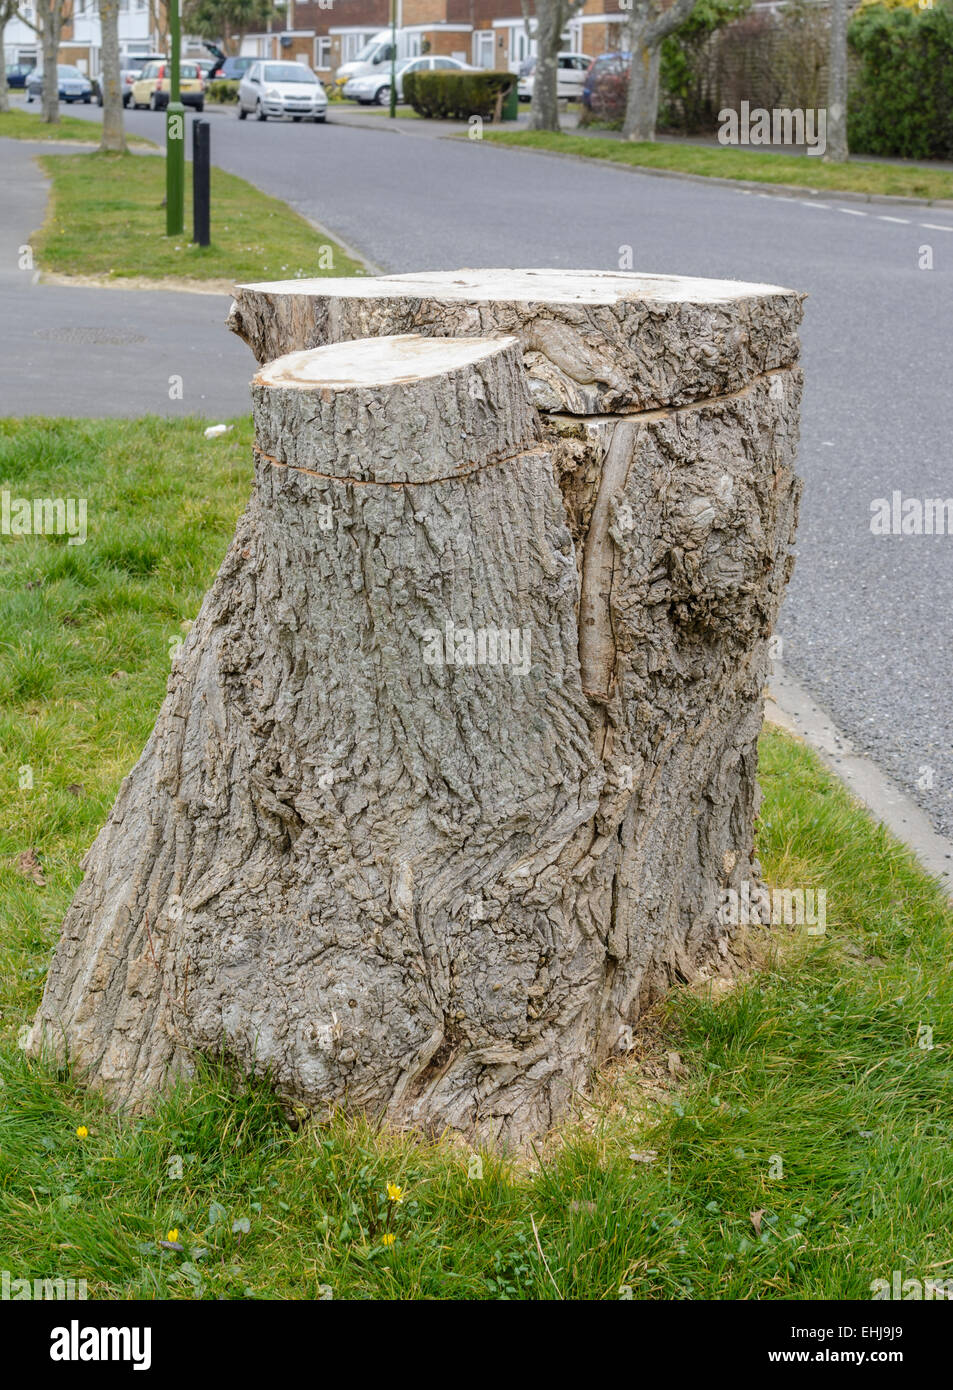 Il moncone di un grande albero sul ciglio della strada dopo essere stato tagliato. Foto Stock